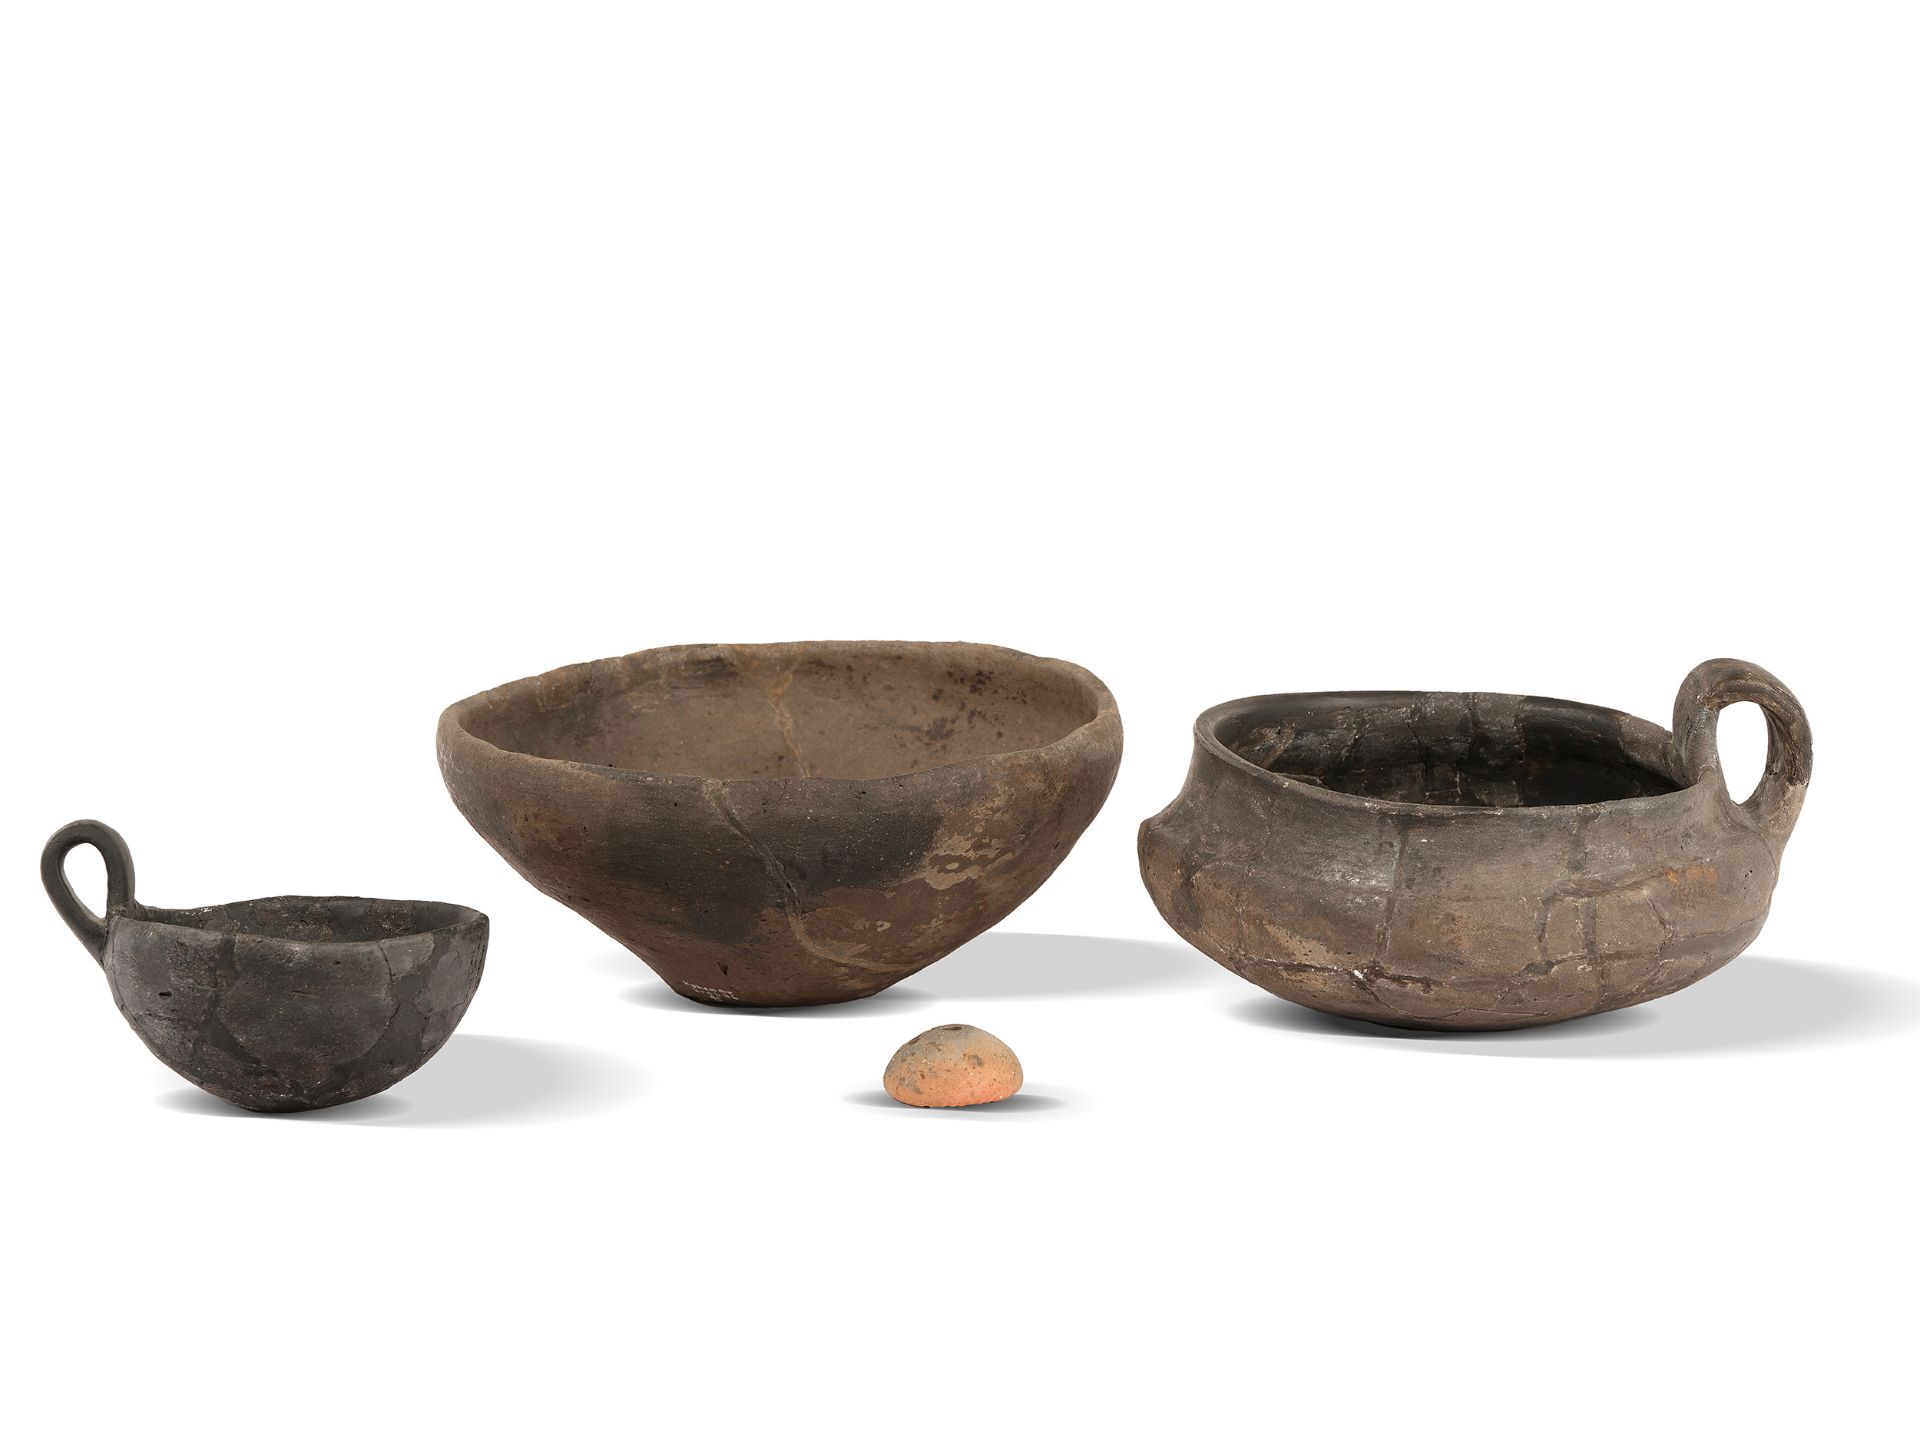 Hallstatt period - assortment of pottery vessels, 
Hohenau a.d. March, 
Hallstatt time C - 800 - 620